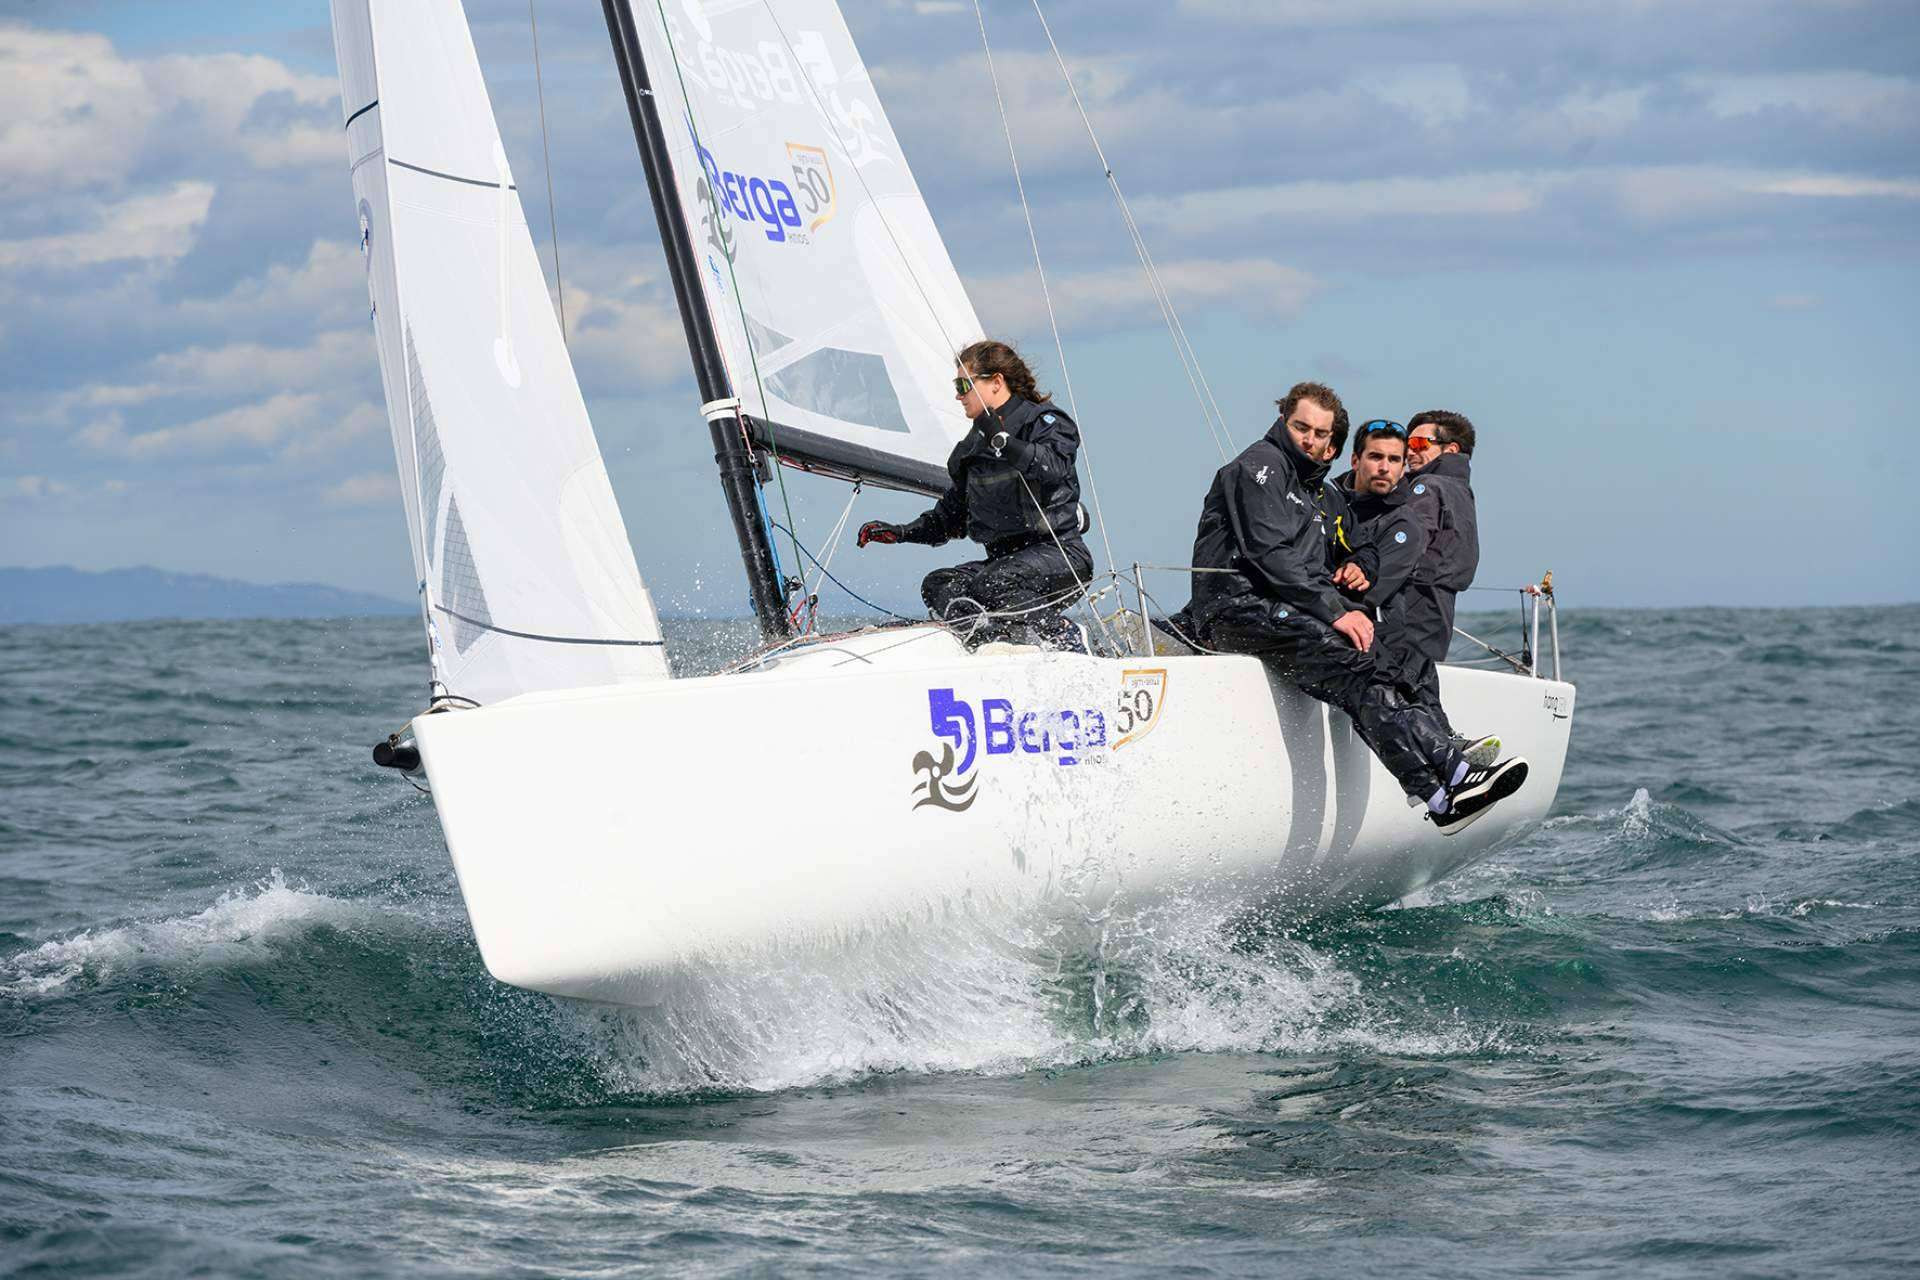  HSN Sailing Team, se mantiene líder de la clasificación general, incluyendo los tres eventos navegados 